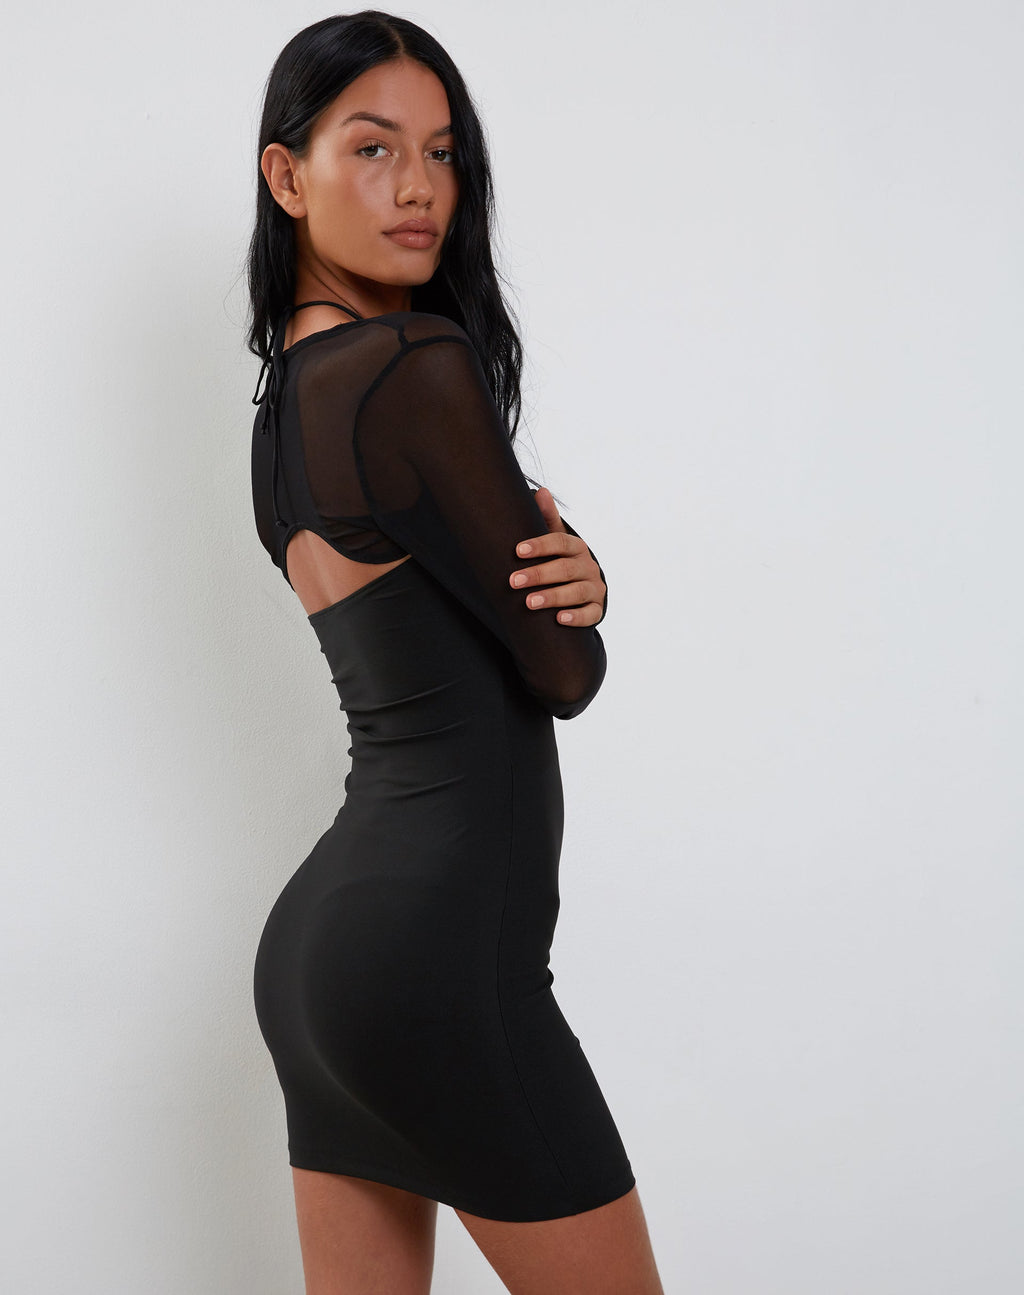 Deluna Long Sleeve Mini Dress in Black Lycra